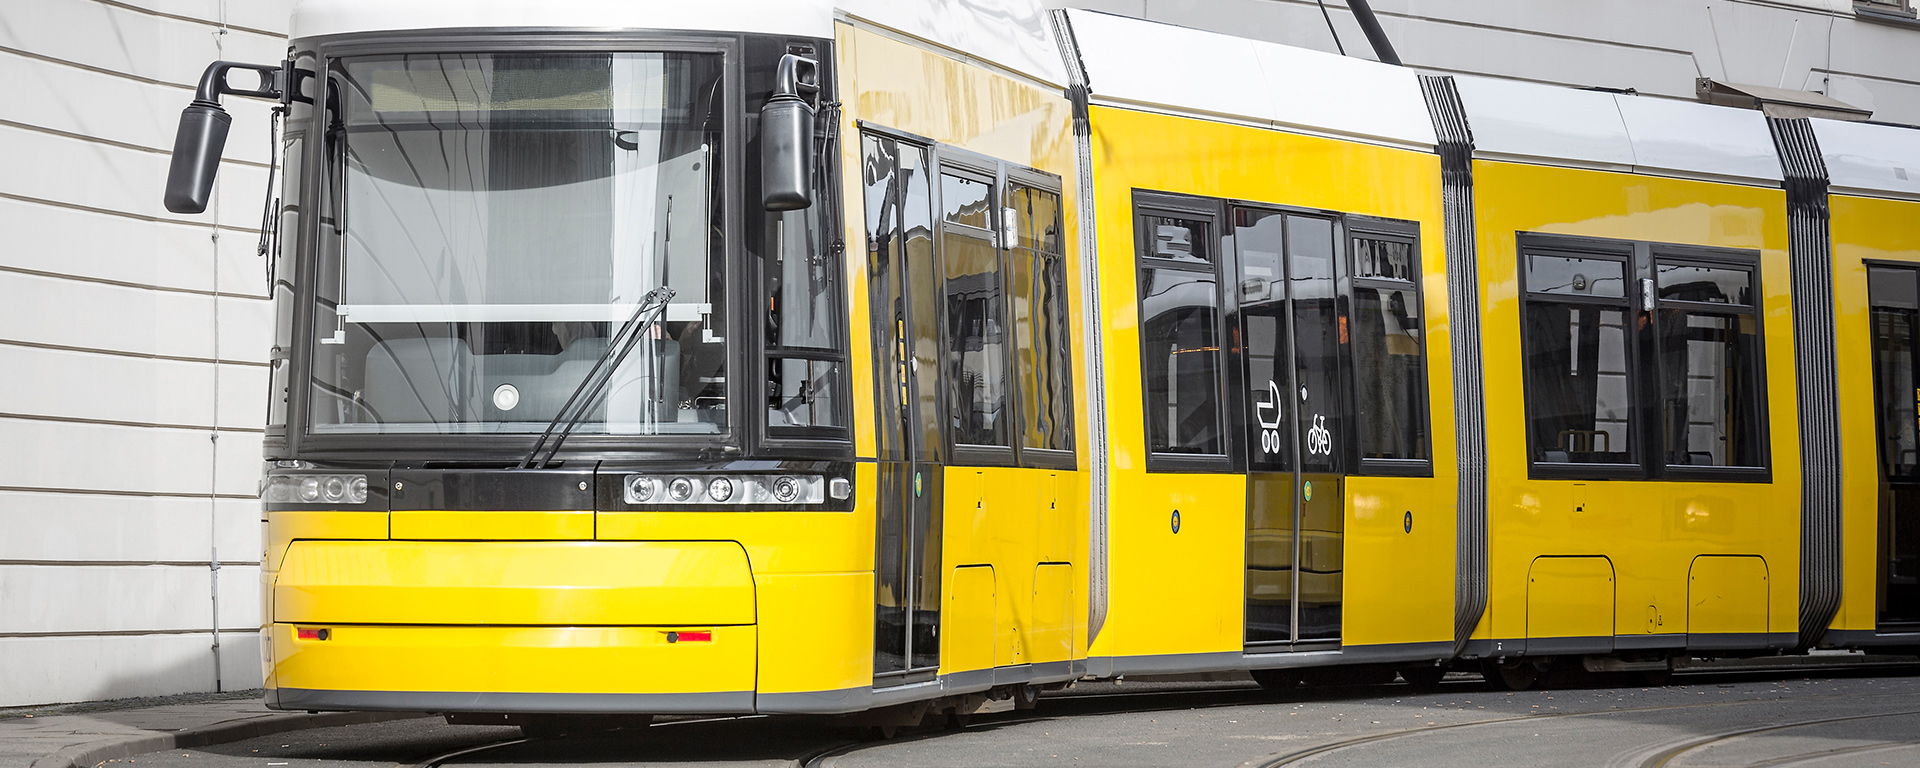 EQOS raccordement au réseau de trams Berlin